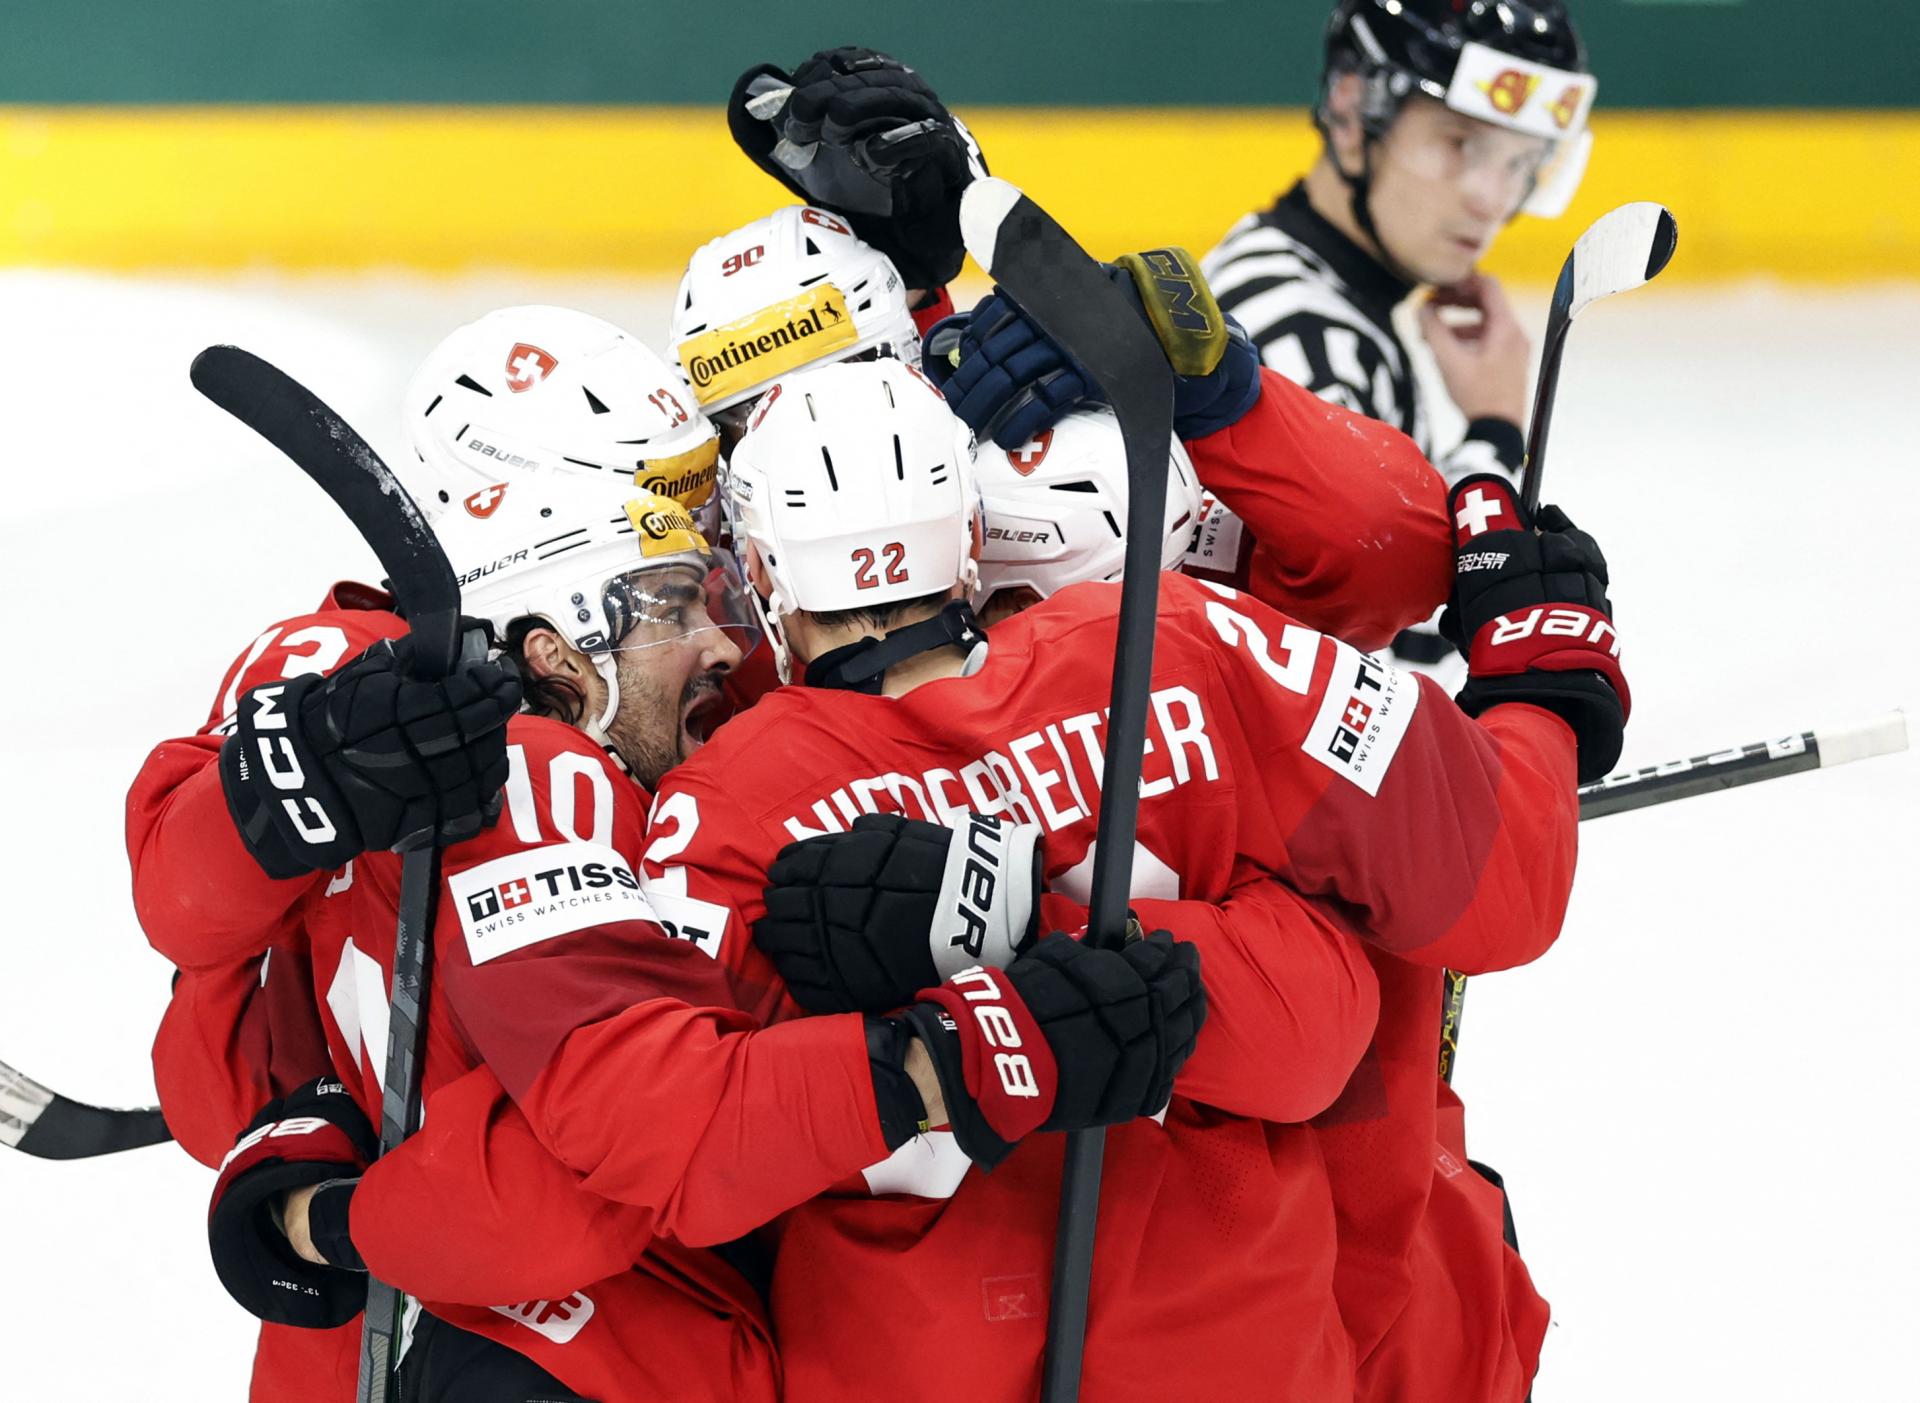 MS v hokeji: Švajčiari idú do finále, zdolali Kanadu po nájazdoch